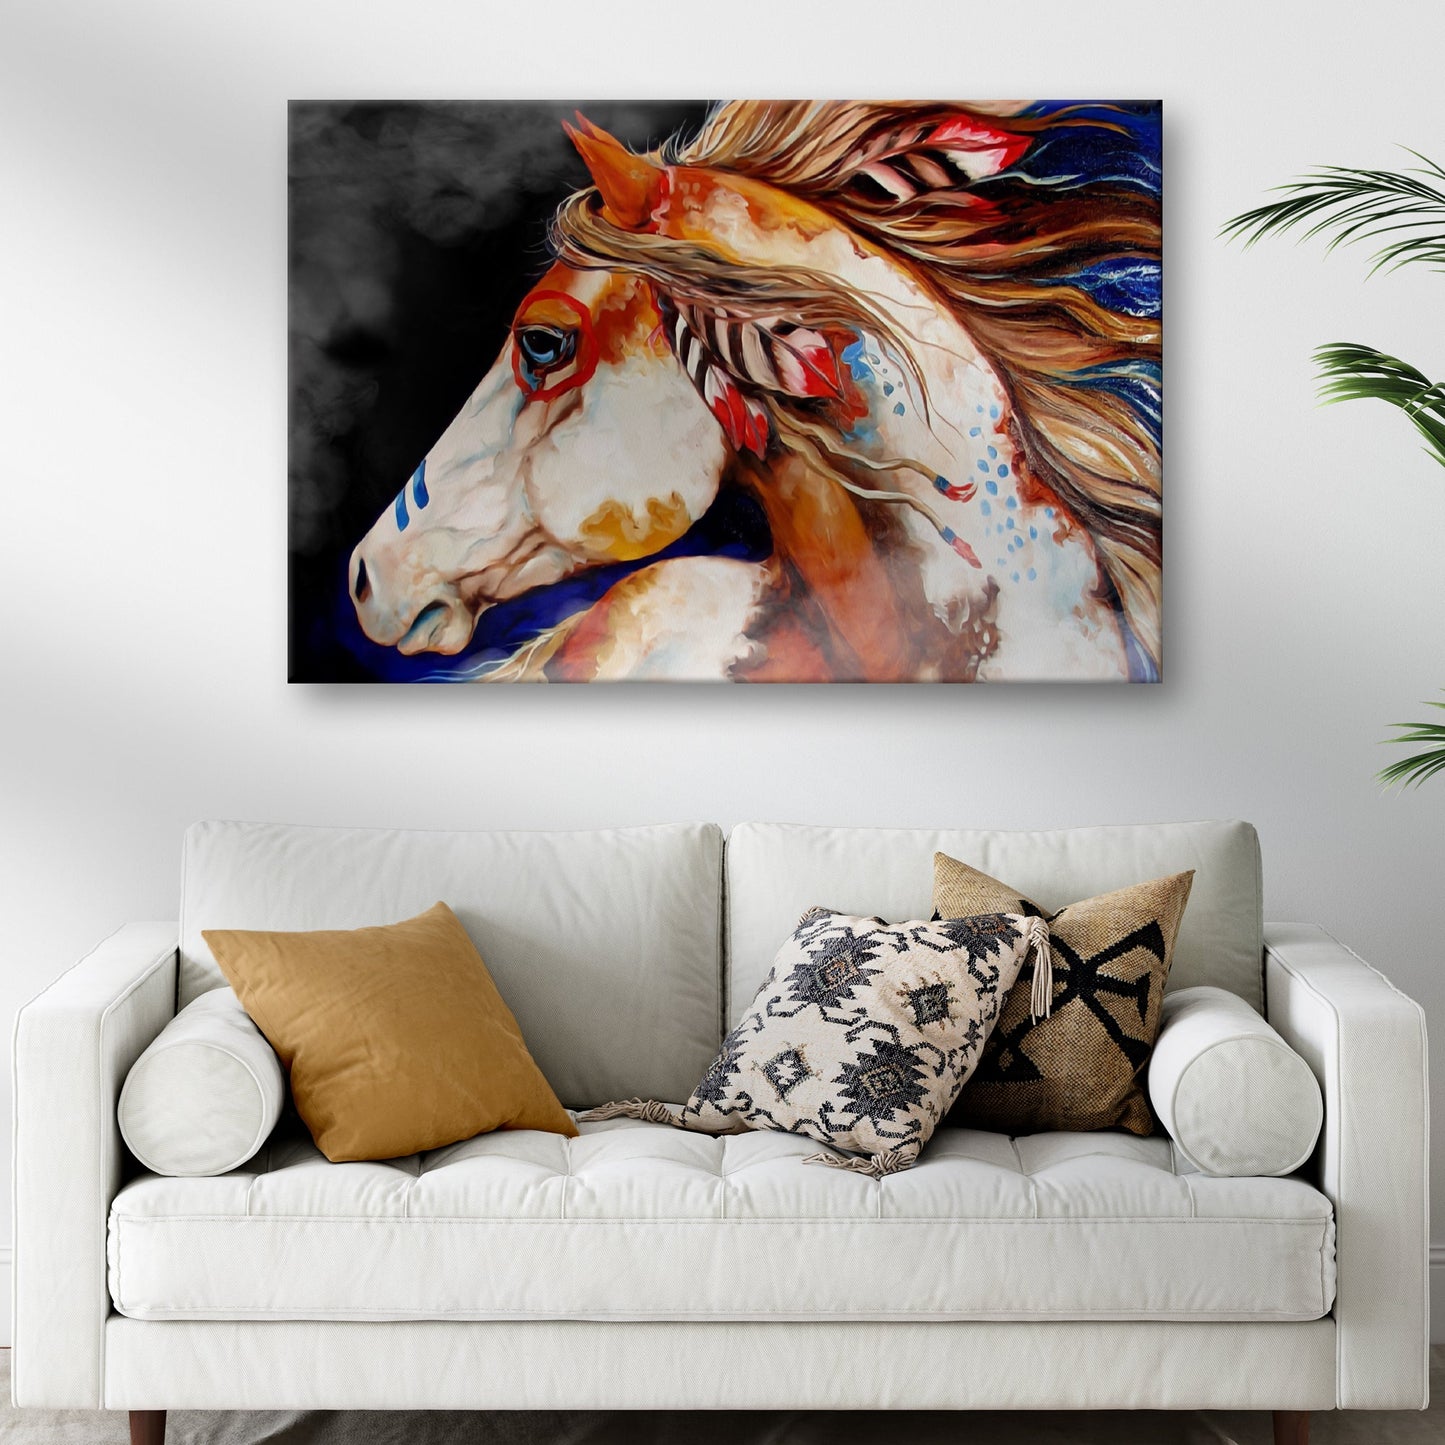 War Horse Chronicles Cherokee War Horse Canvas Wall Art